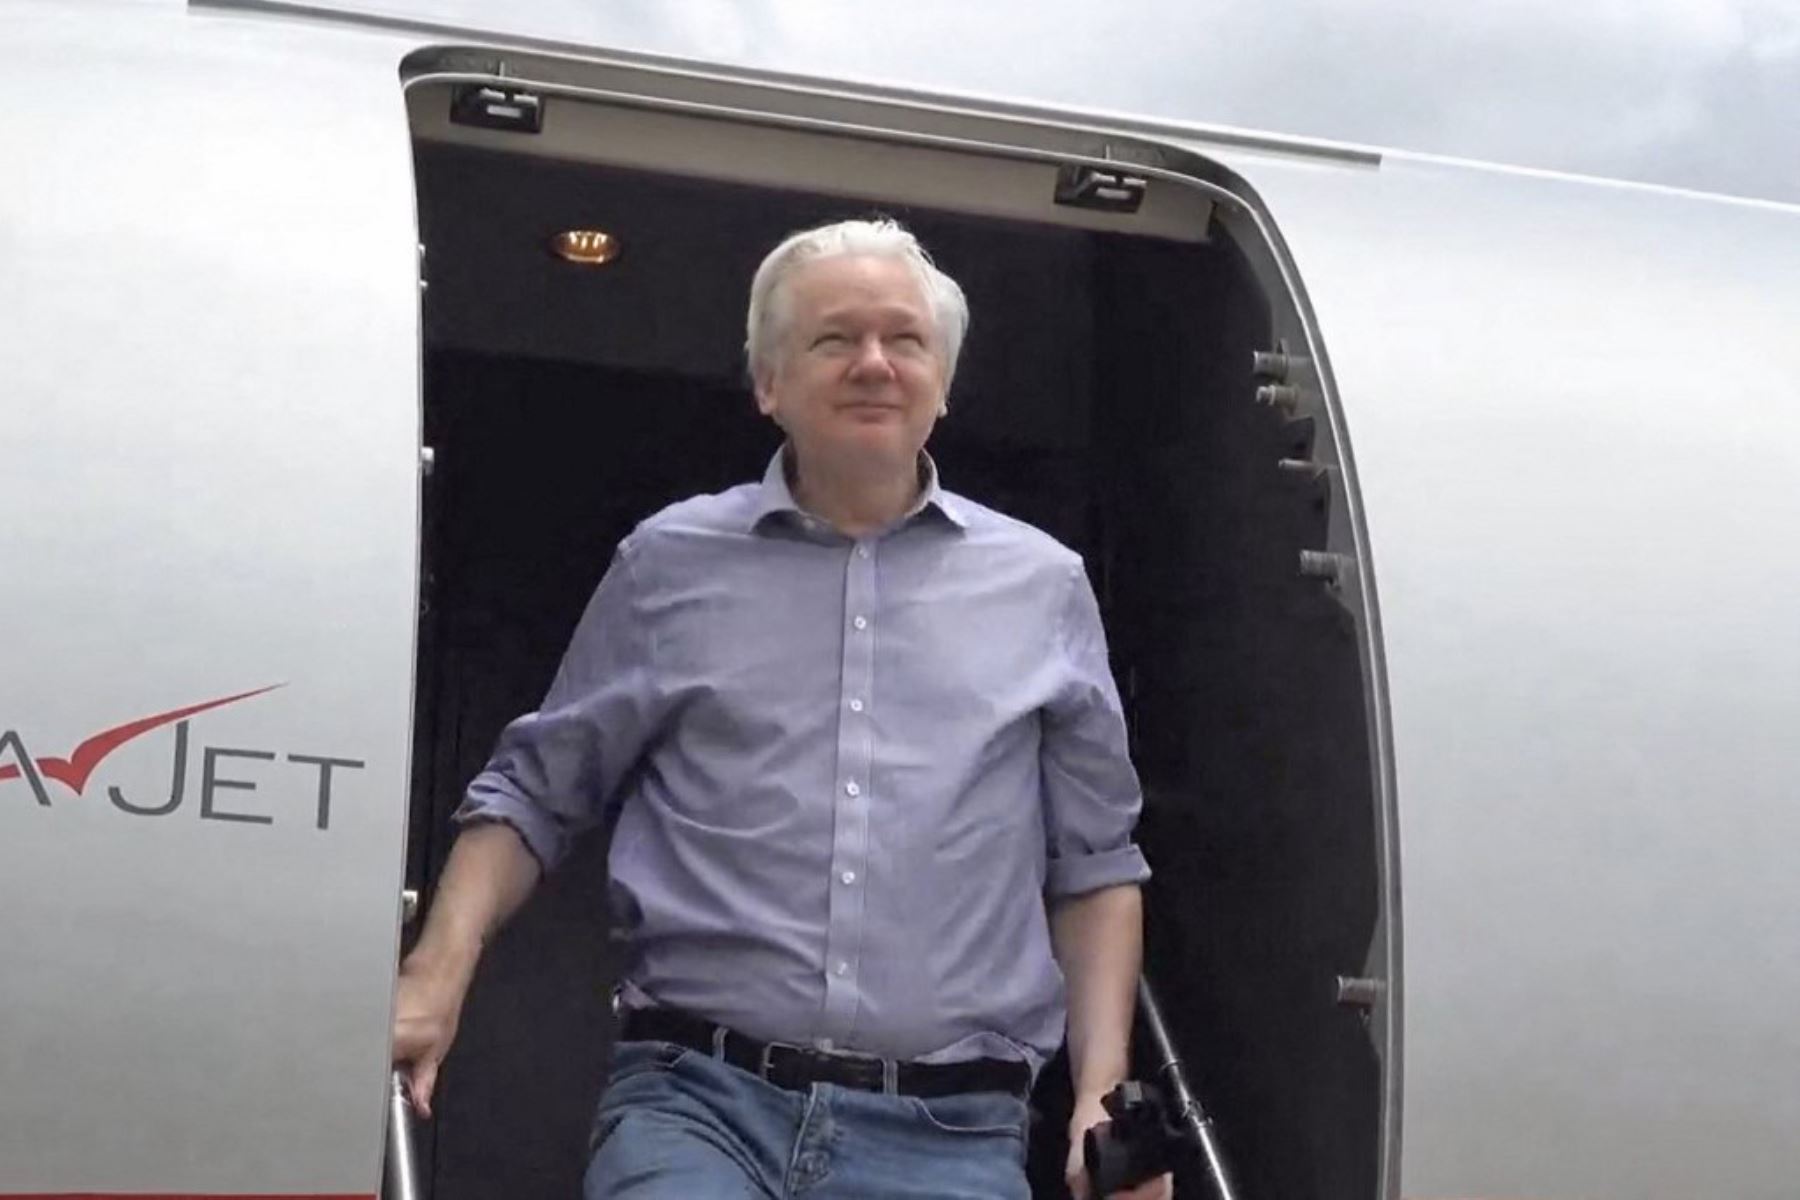 El fundador de WikiLeaks, Julian Assange, baja de su vuelo desde Londres al llegar a Bangkok para hacer una escala en el aeropuerto internacional Don Mueang de la capital tailandesa. Assange ha sido liberado de prisión en Gran Bretaña y se enfrentará a una audiencia judicial final después de llegar a un acuerdo de culpabilidad con las autoridades estadounidenses que pone fin a su drama legal de años. Foto: AFP